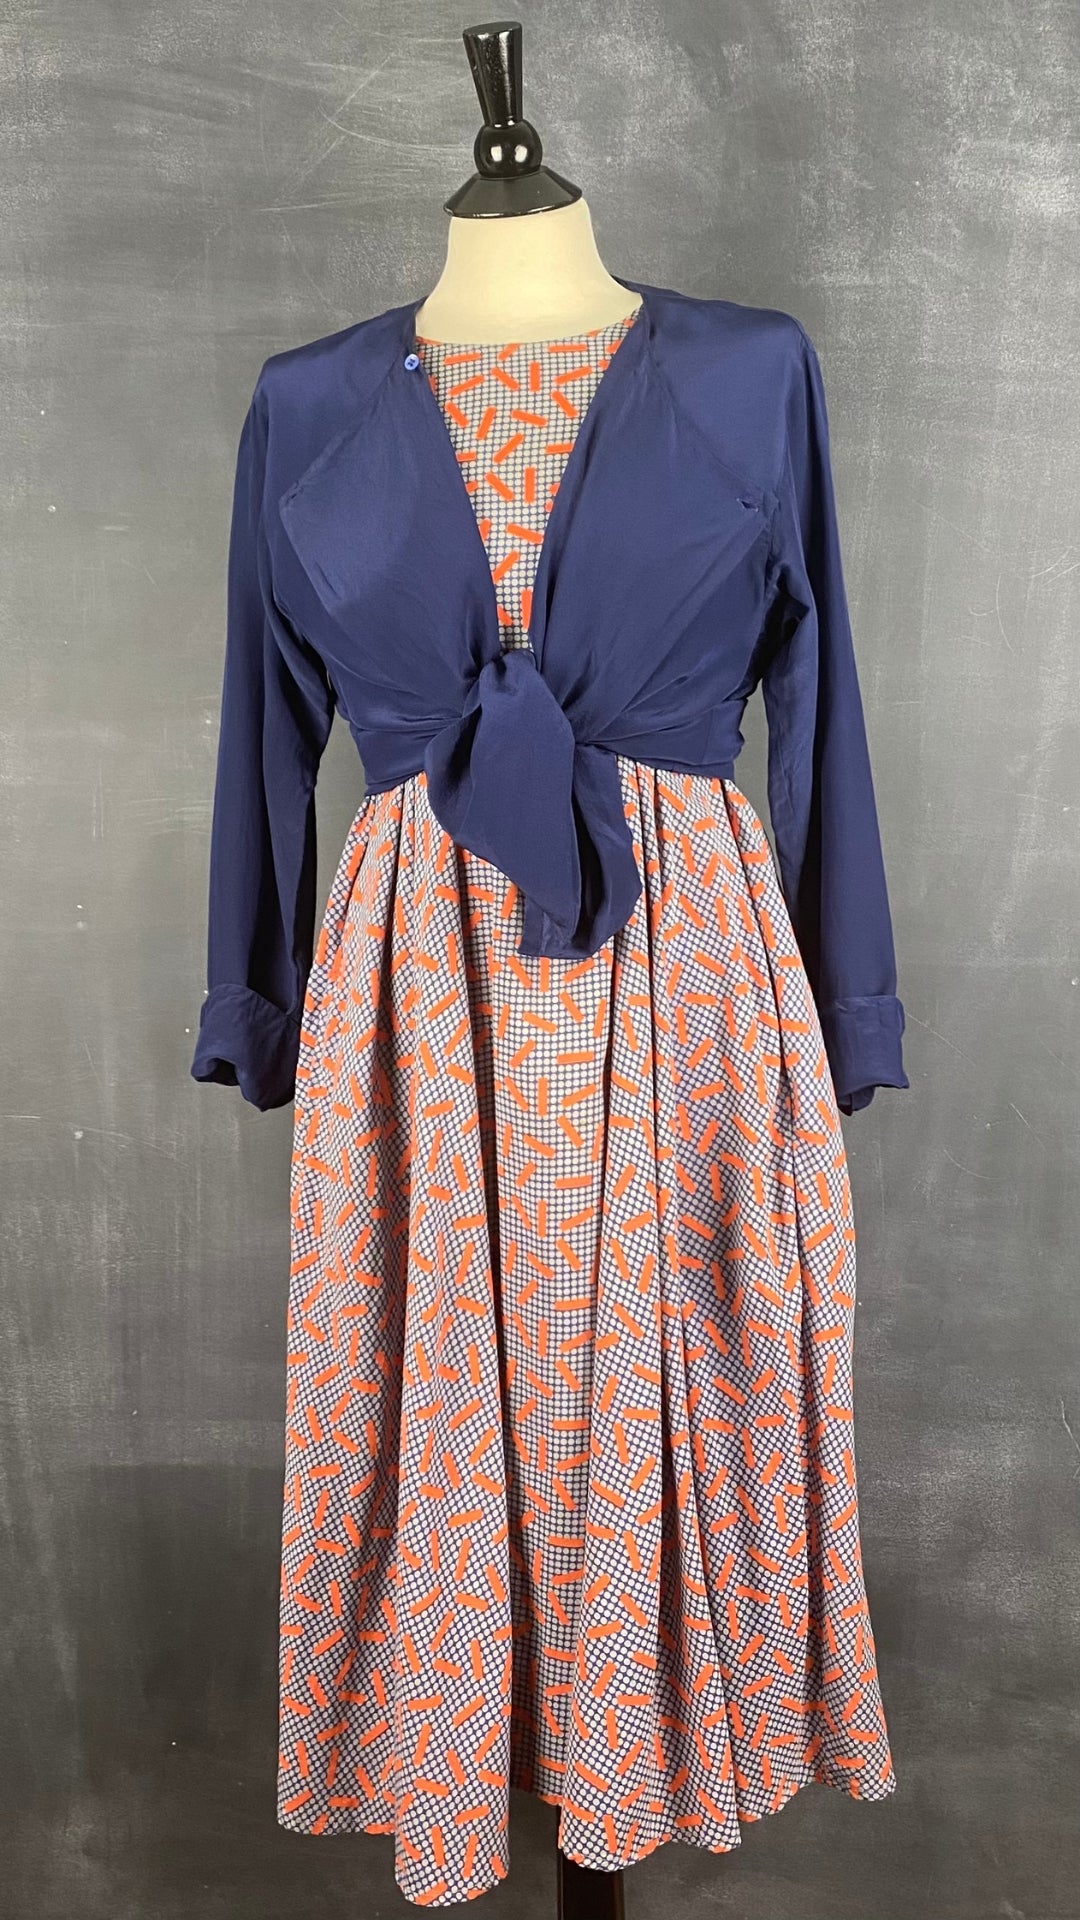 Robe trapèze à motifs Nathalie Du Pasquier pour American Apparel, taille one size. Vue de l'agencement avec la veste en soie Calvin Klein.